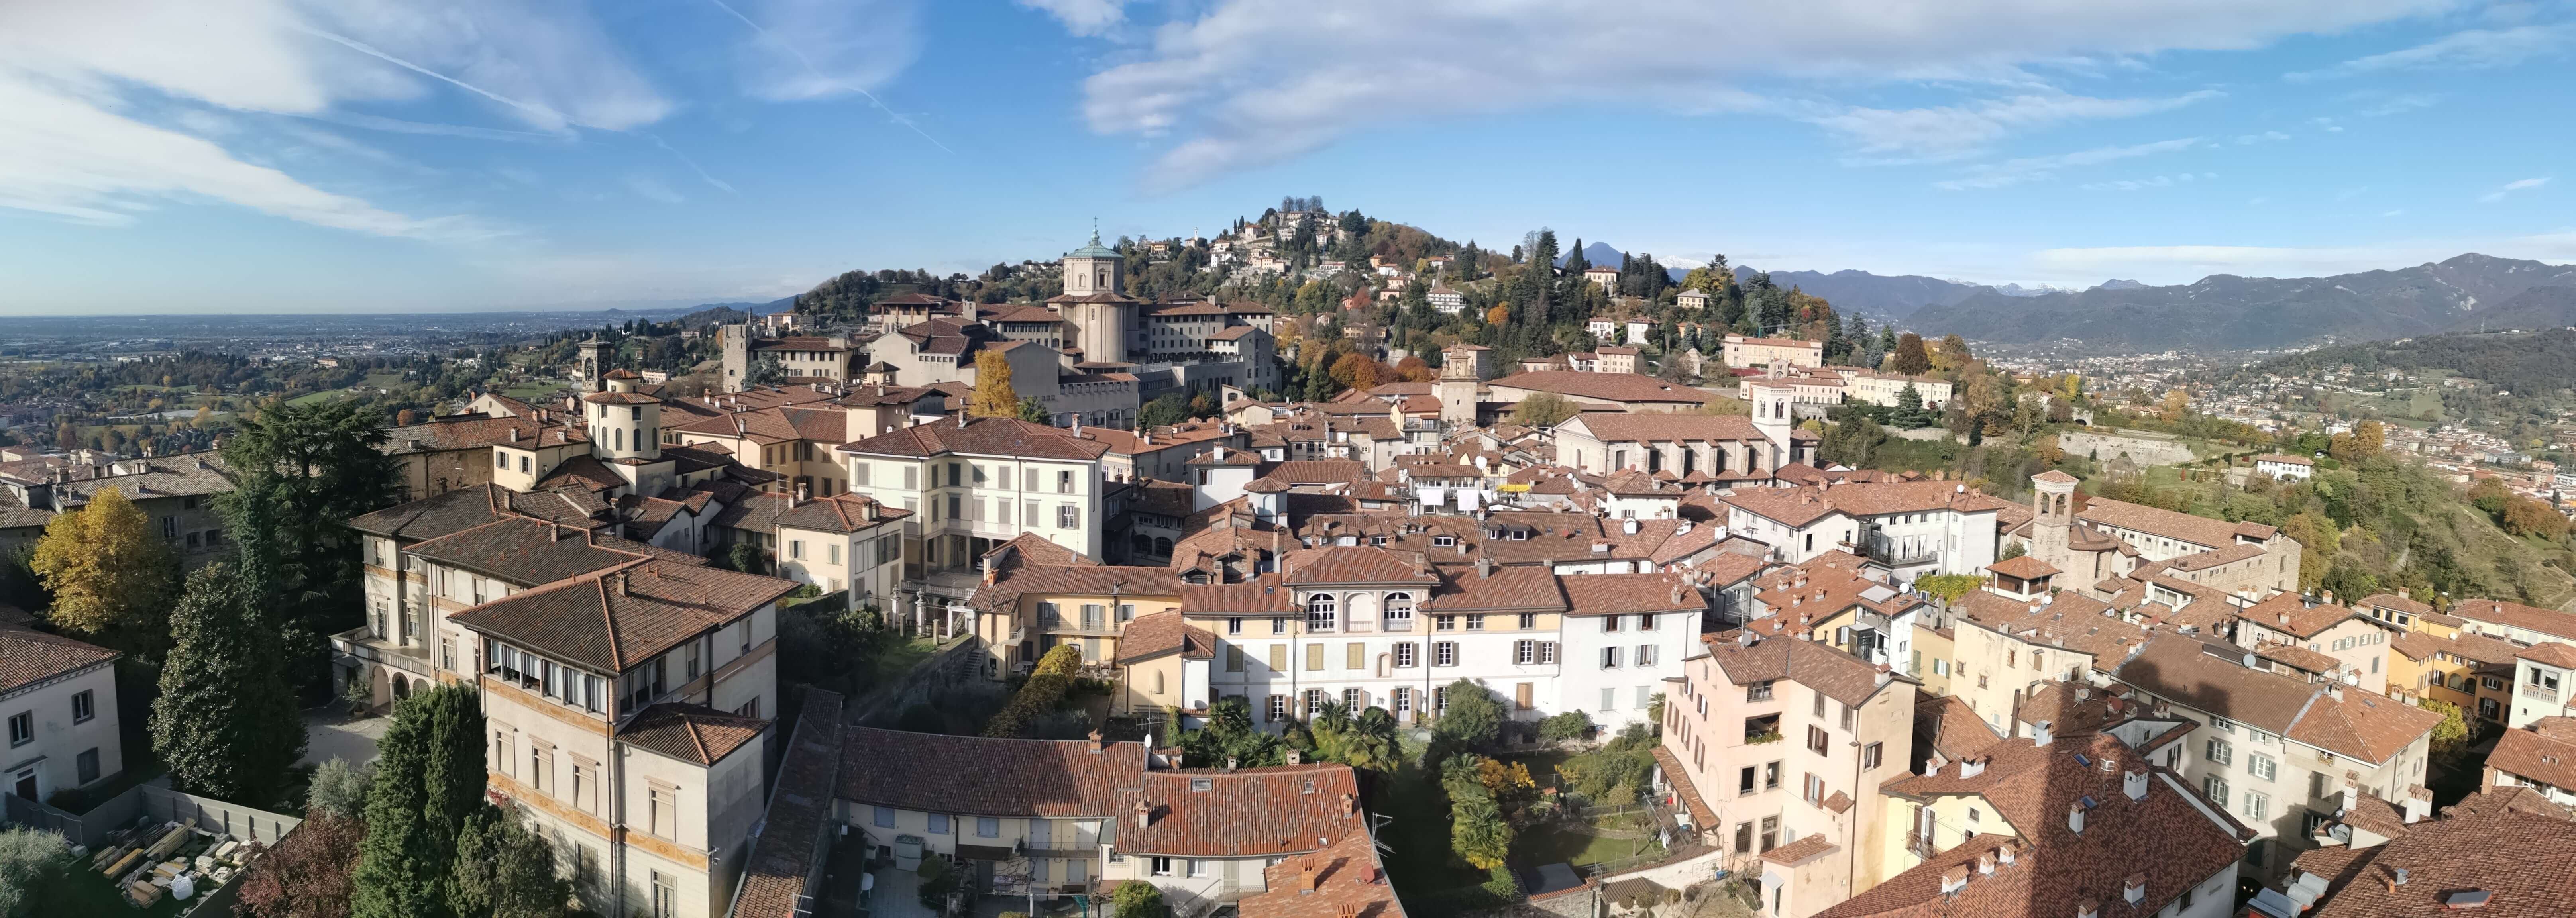 Panorama_Bergamo.jpg